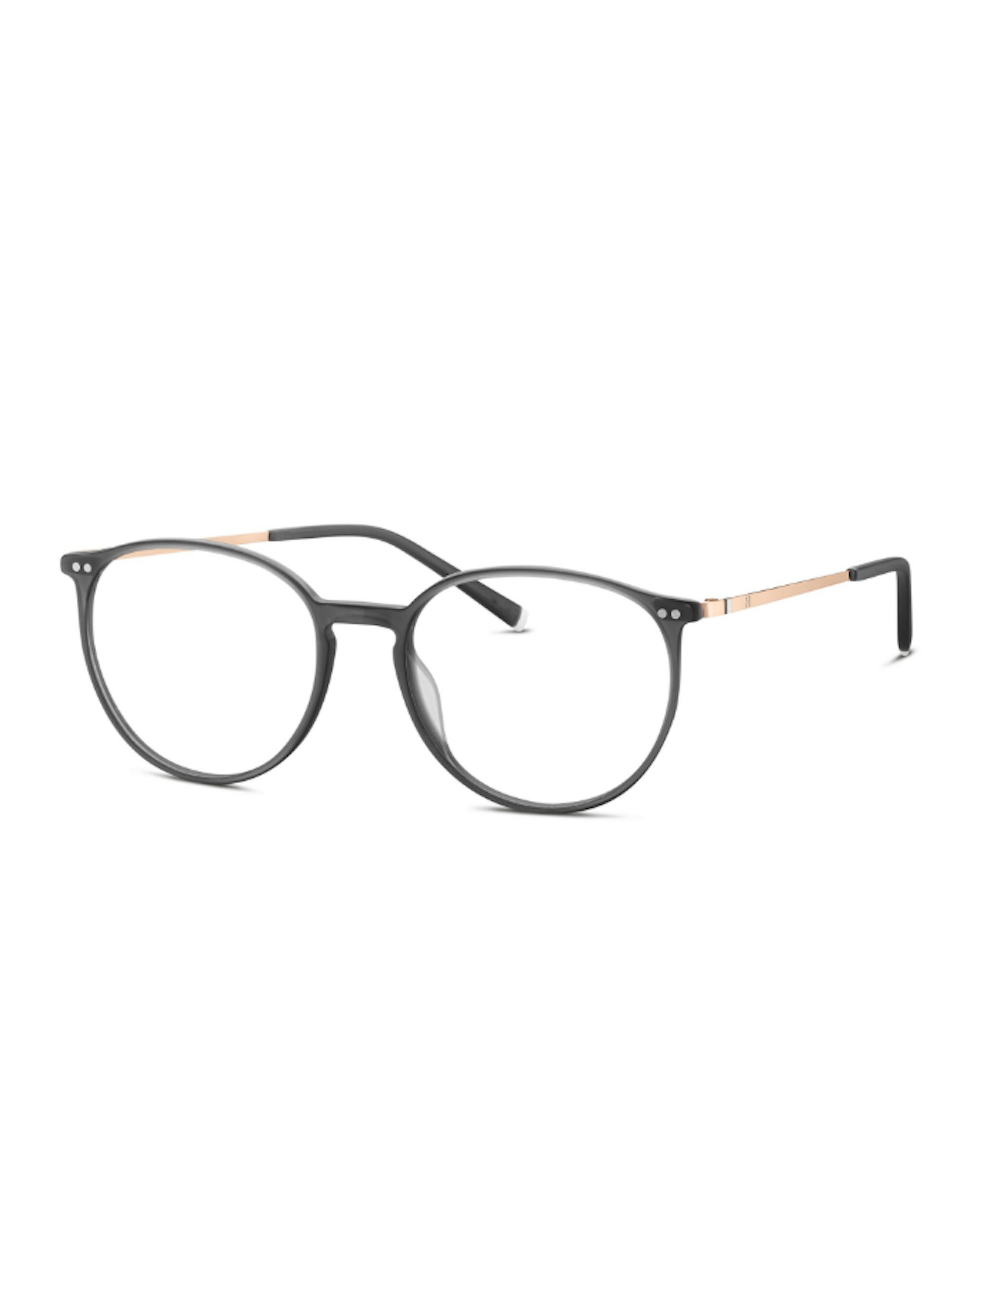 Humphrey's eyewear 581105 30 occhiali da vista rotondi grigio trasparente